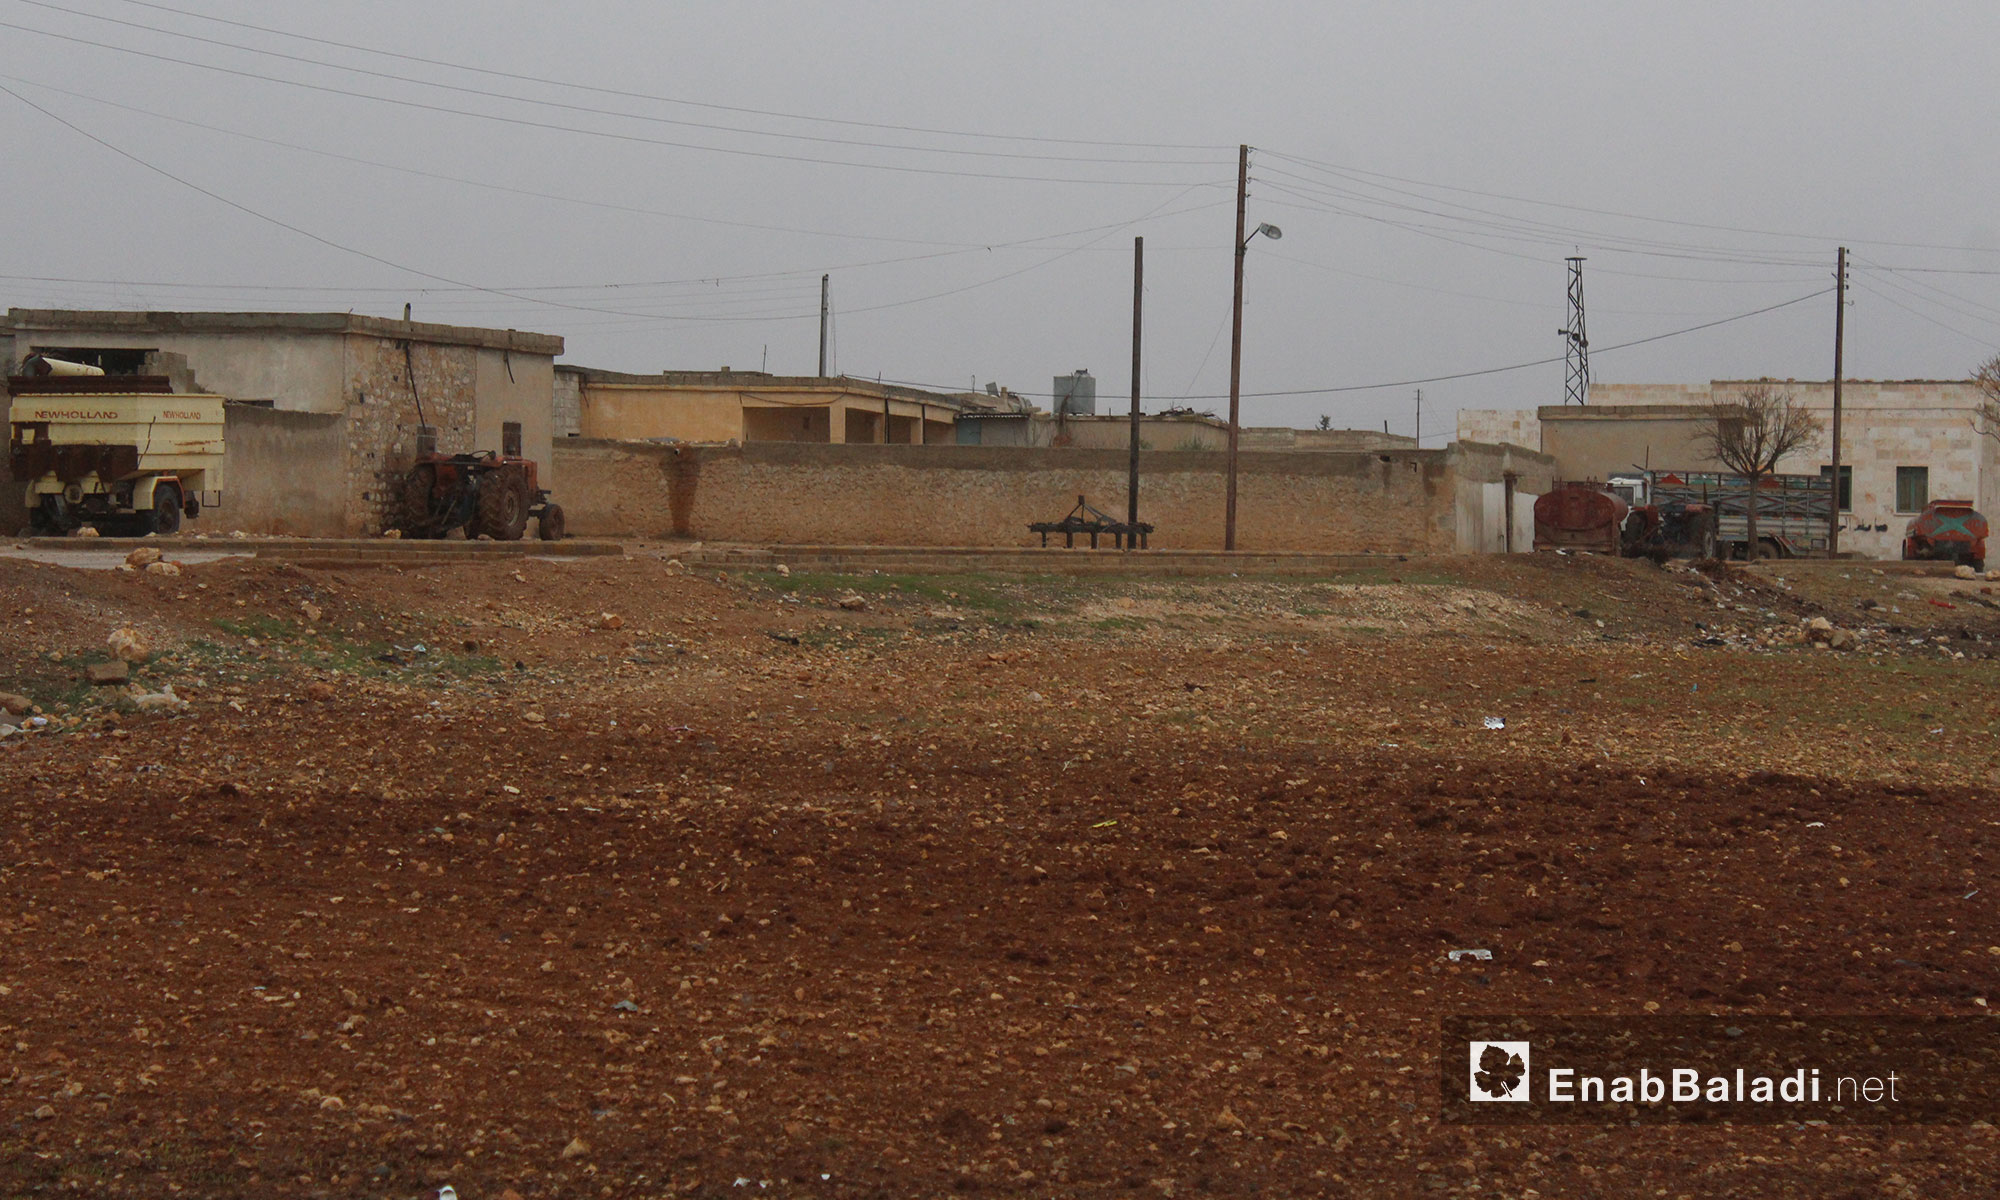  قرية الزيادية بريف حلب الشمالي بعد هطول الأمطار - 14 كانون الأول 2016 (عنب بلدي)